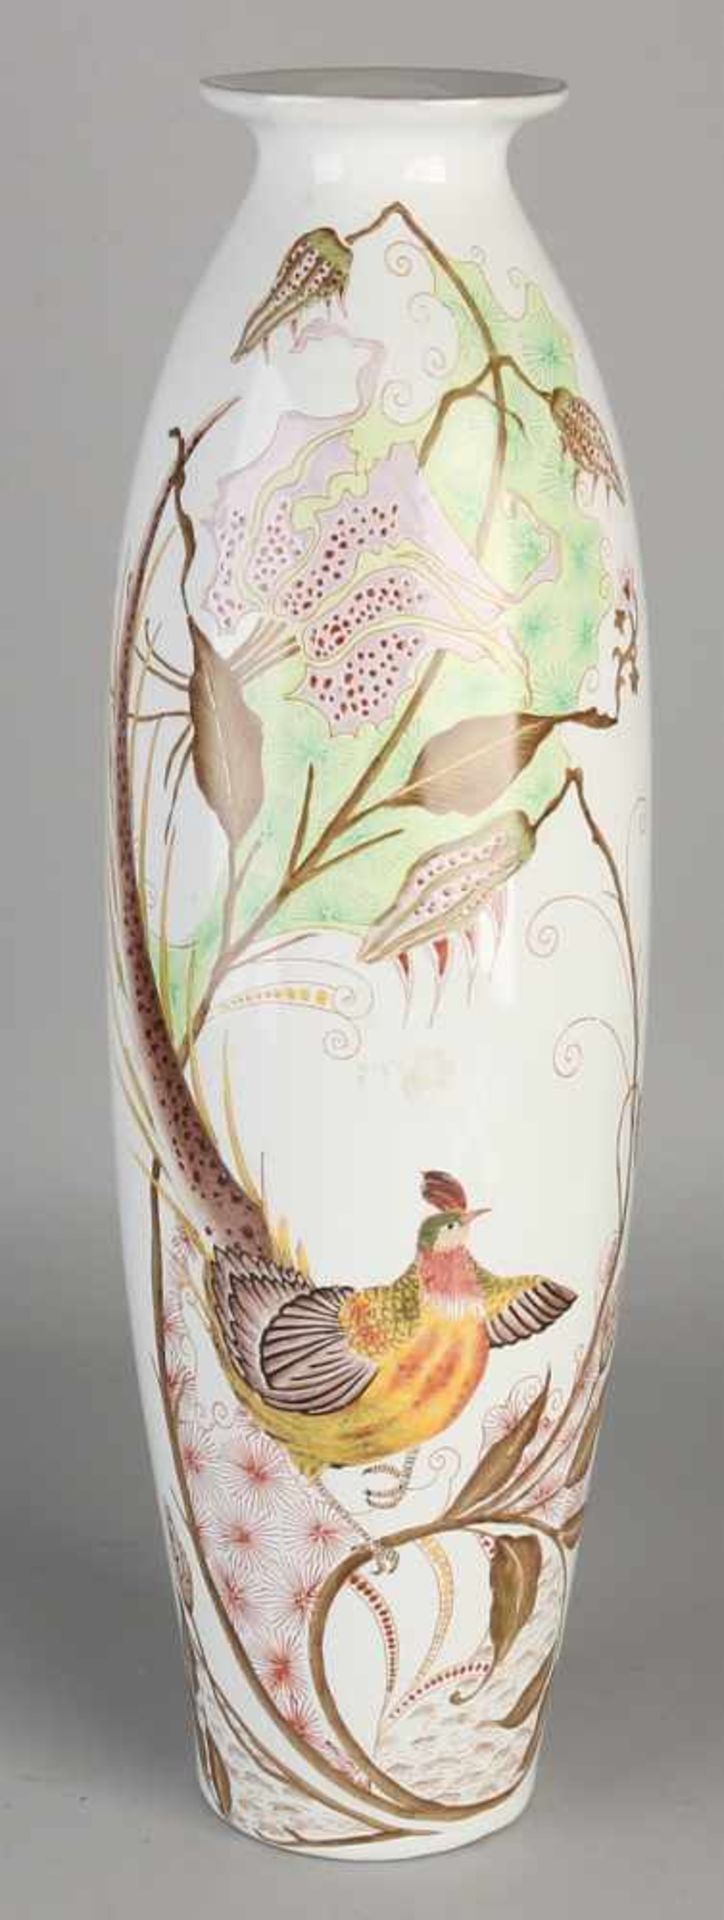 Large Art Nouveau porcelain vase with floral decoration and gold pheasants. Signature Rozenburg